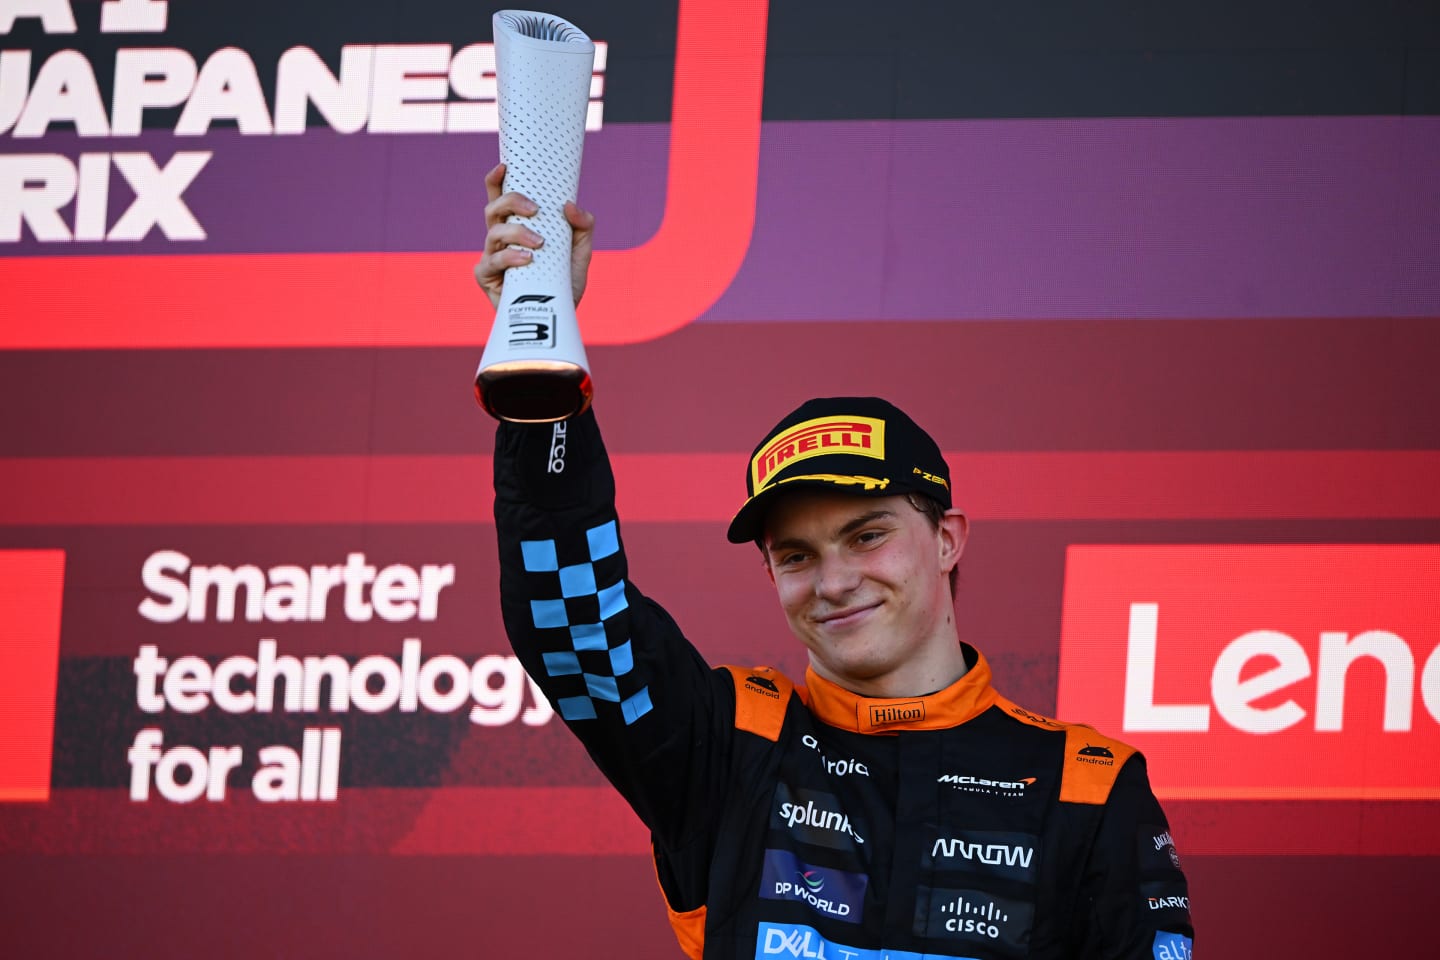 SUZUKA, JAPAN - SEPTEMBER 24: Third placed Oscar Piastri of Australia and McLaren celebrates on the